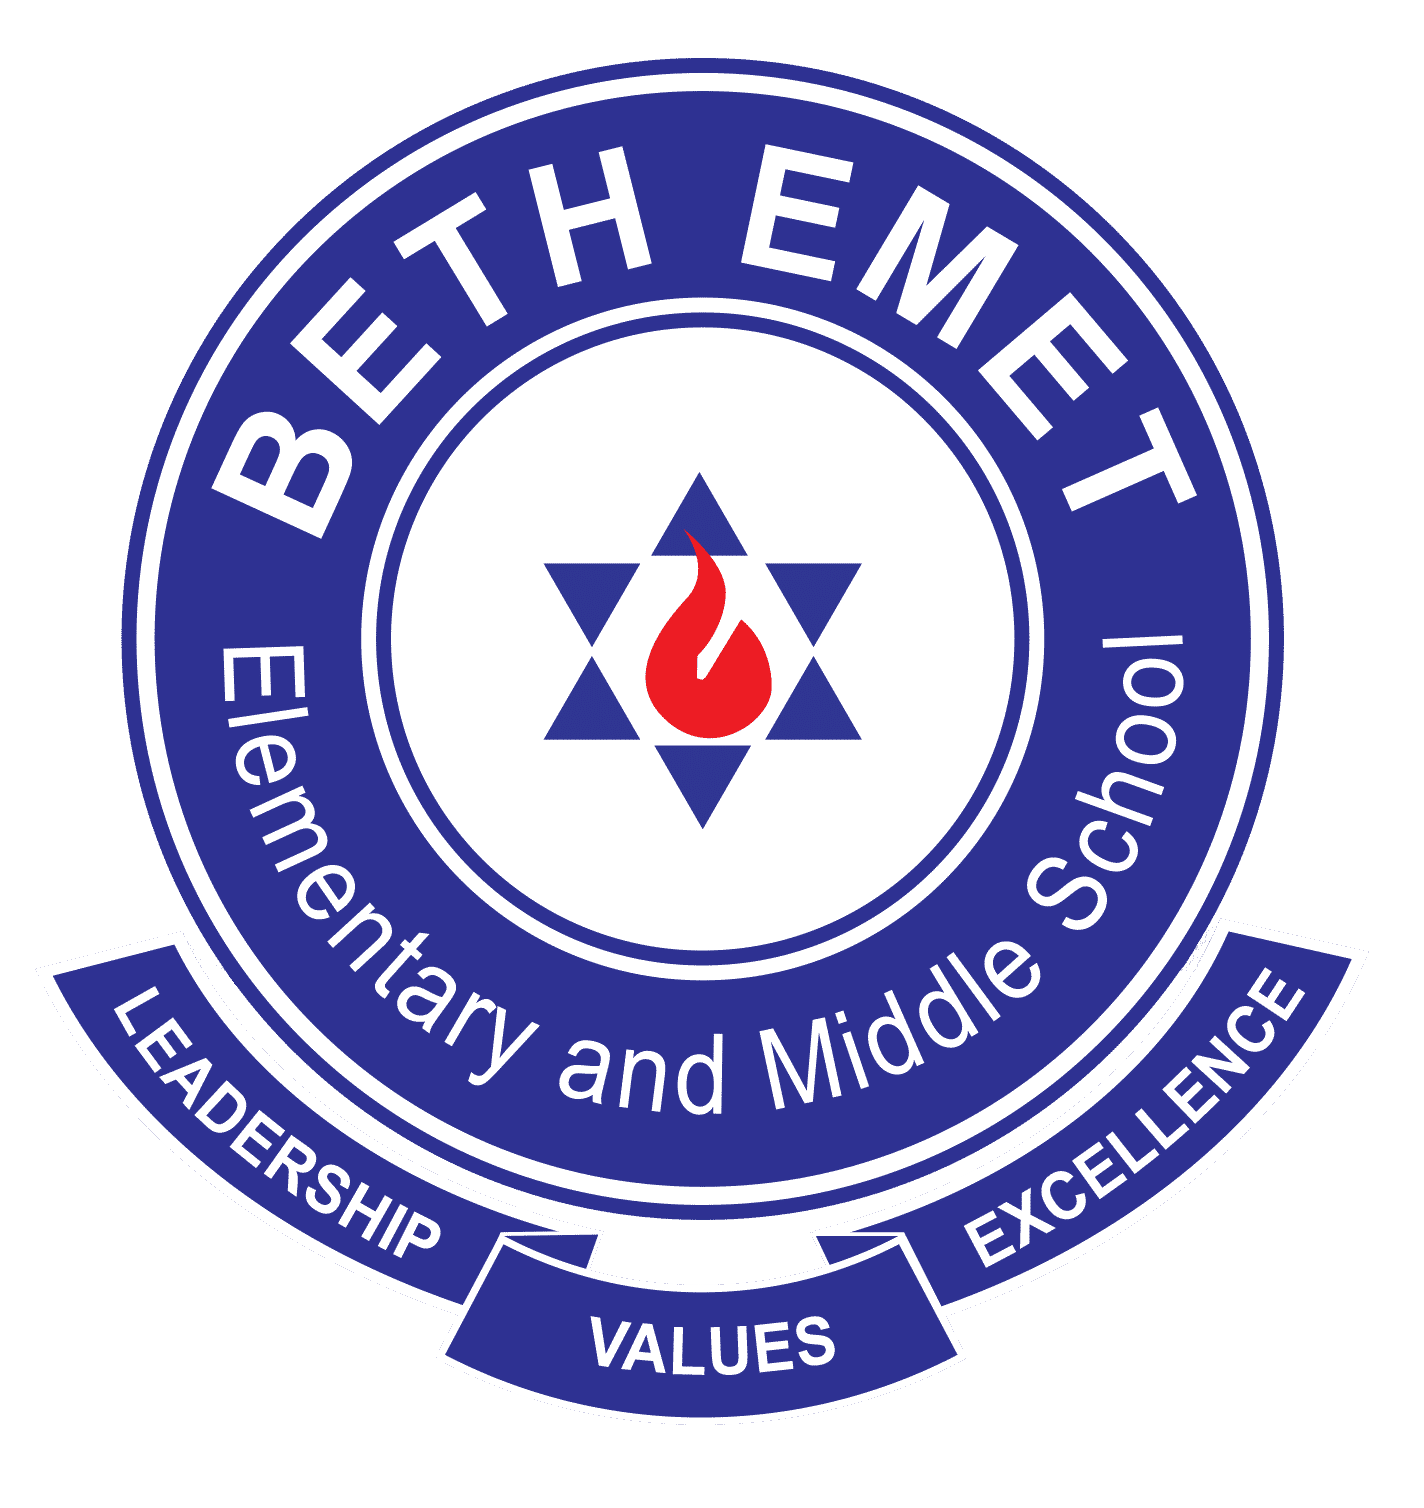 Beth Emet School